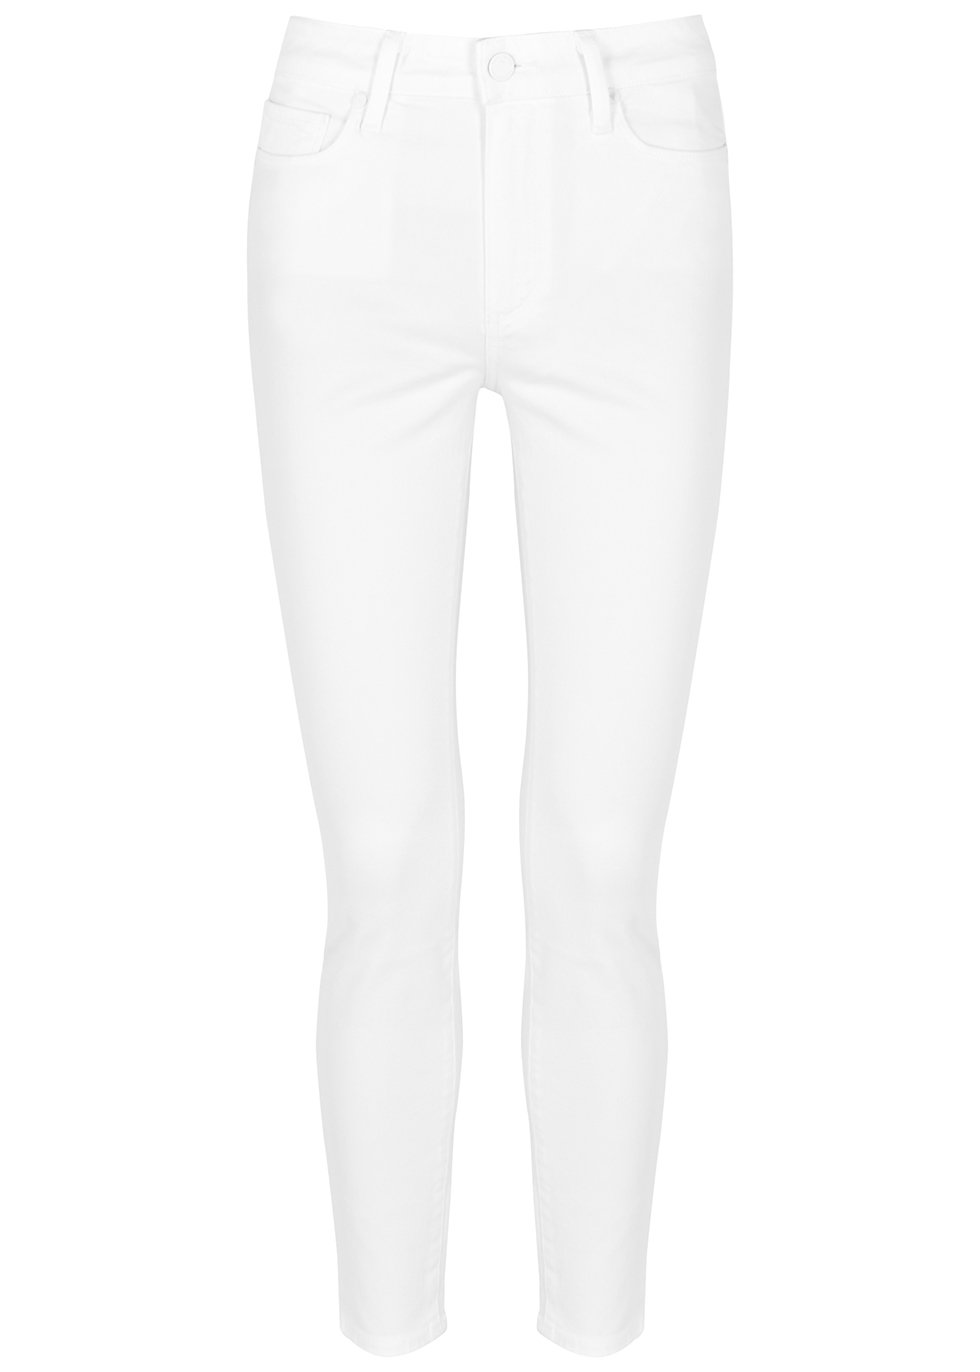 paige denim white jeans